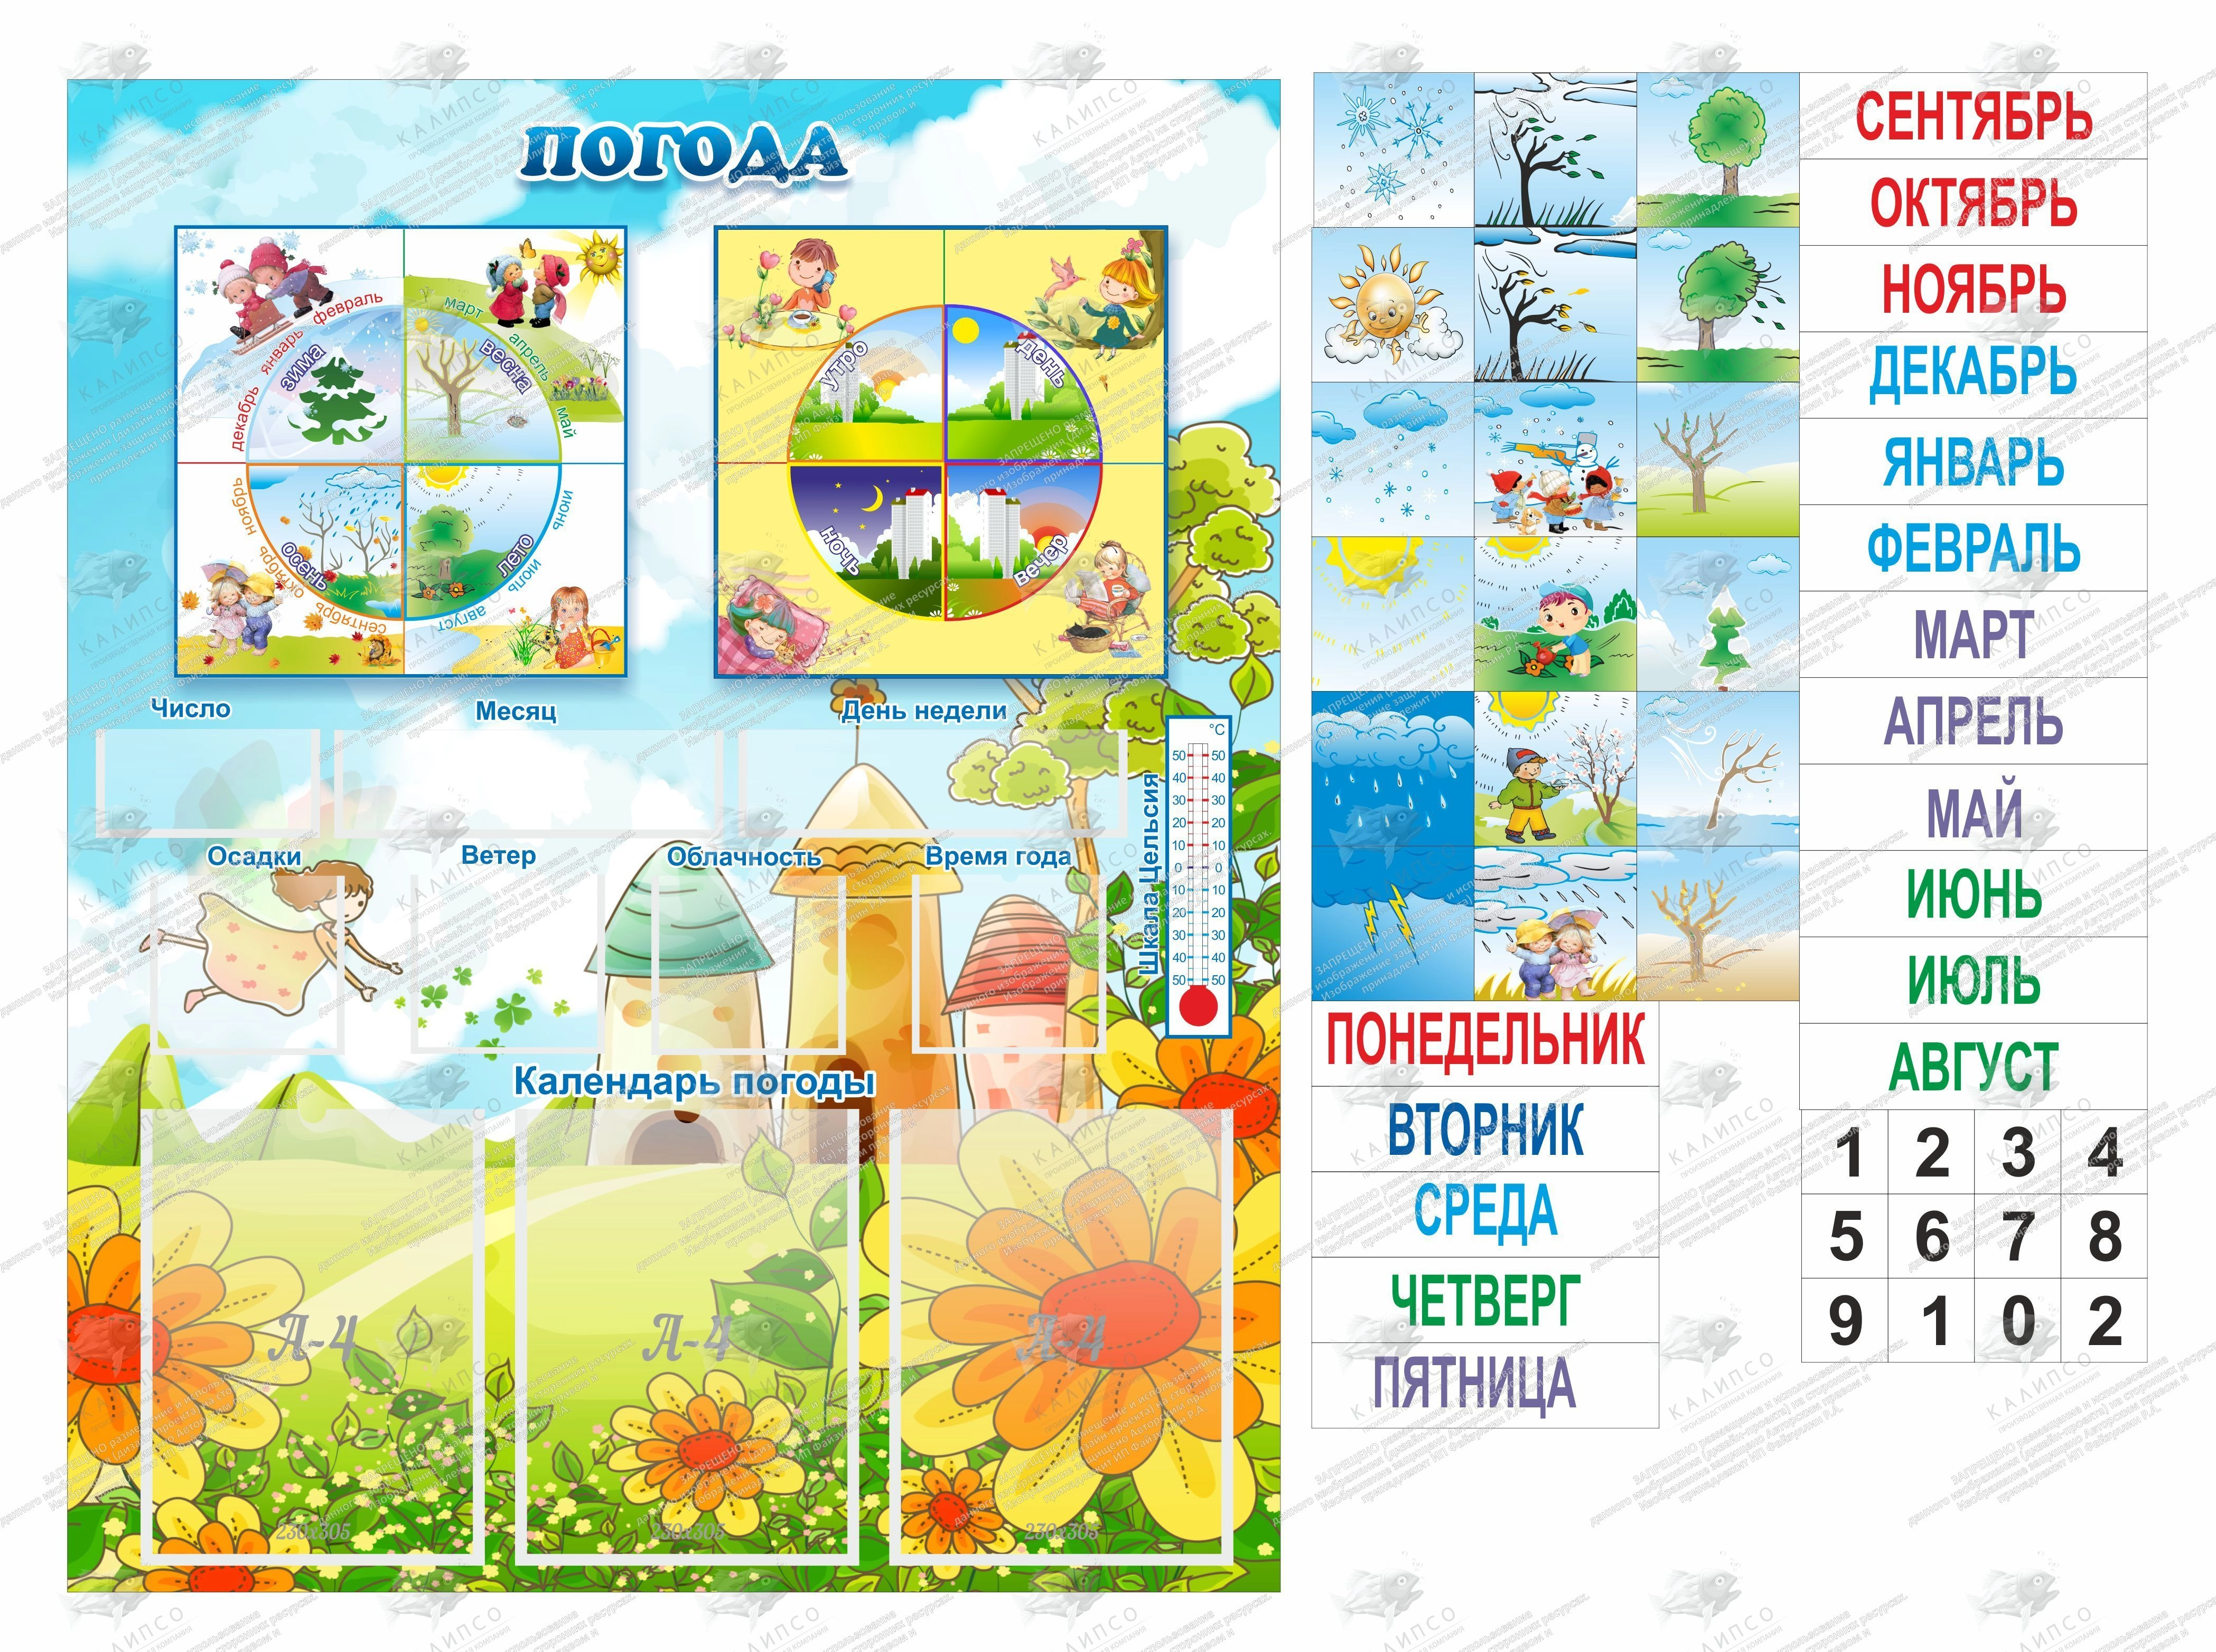 Календарь погоды для детского сада, распечатать шаблон